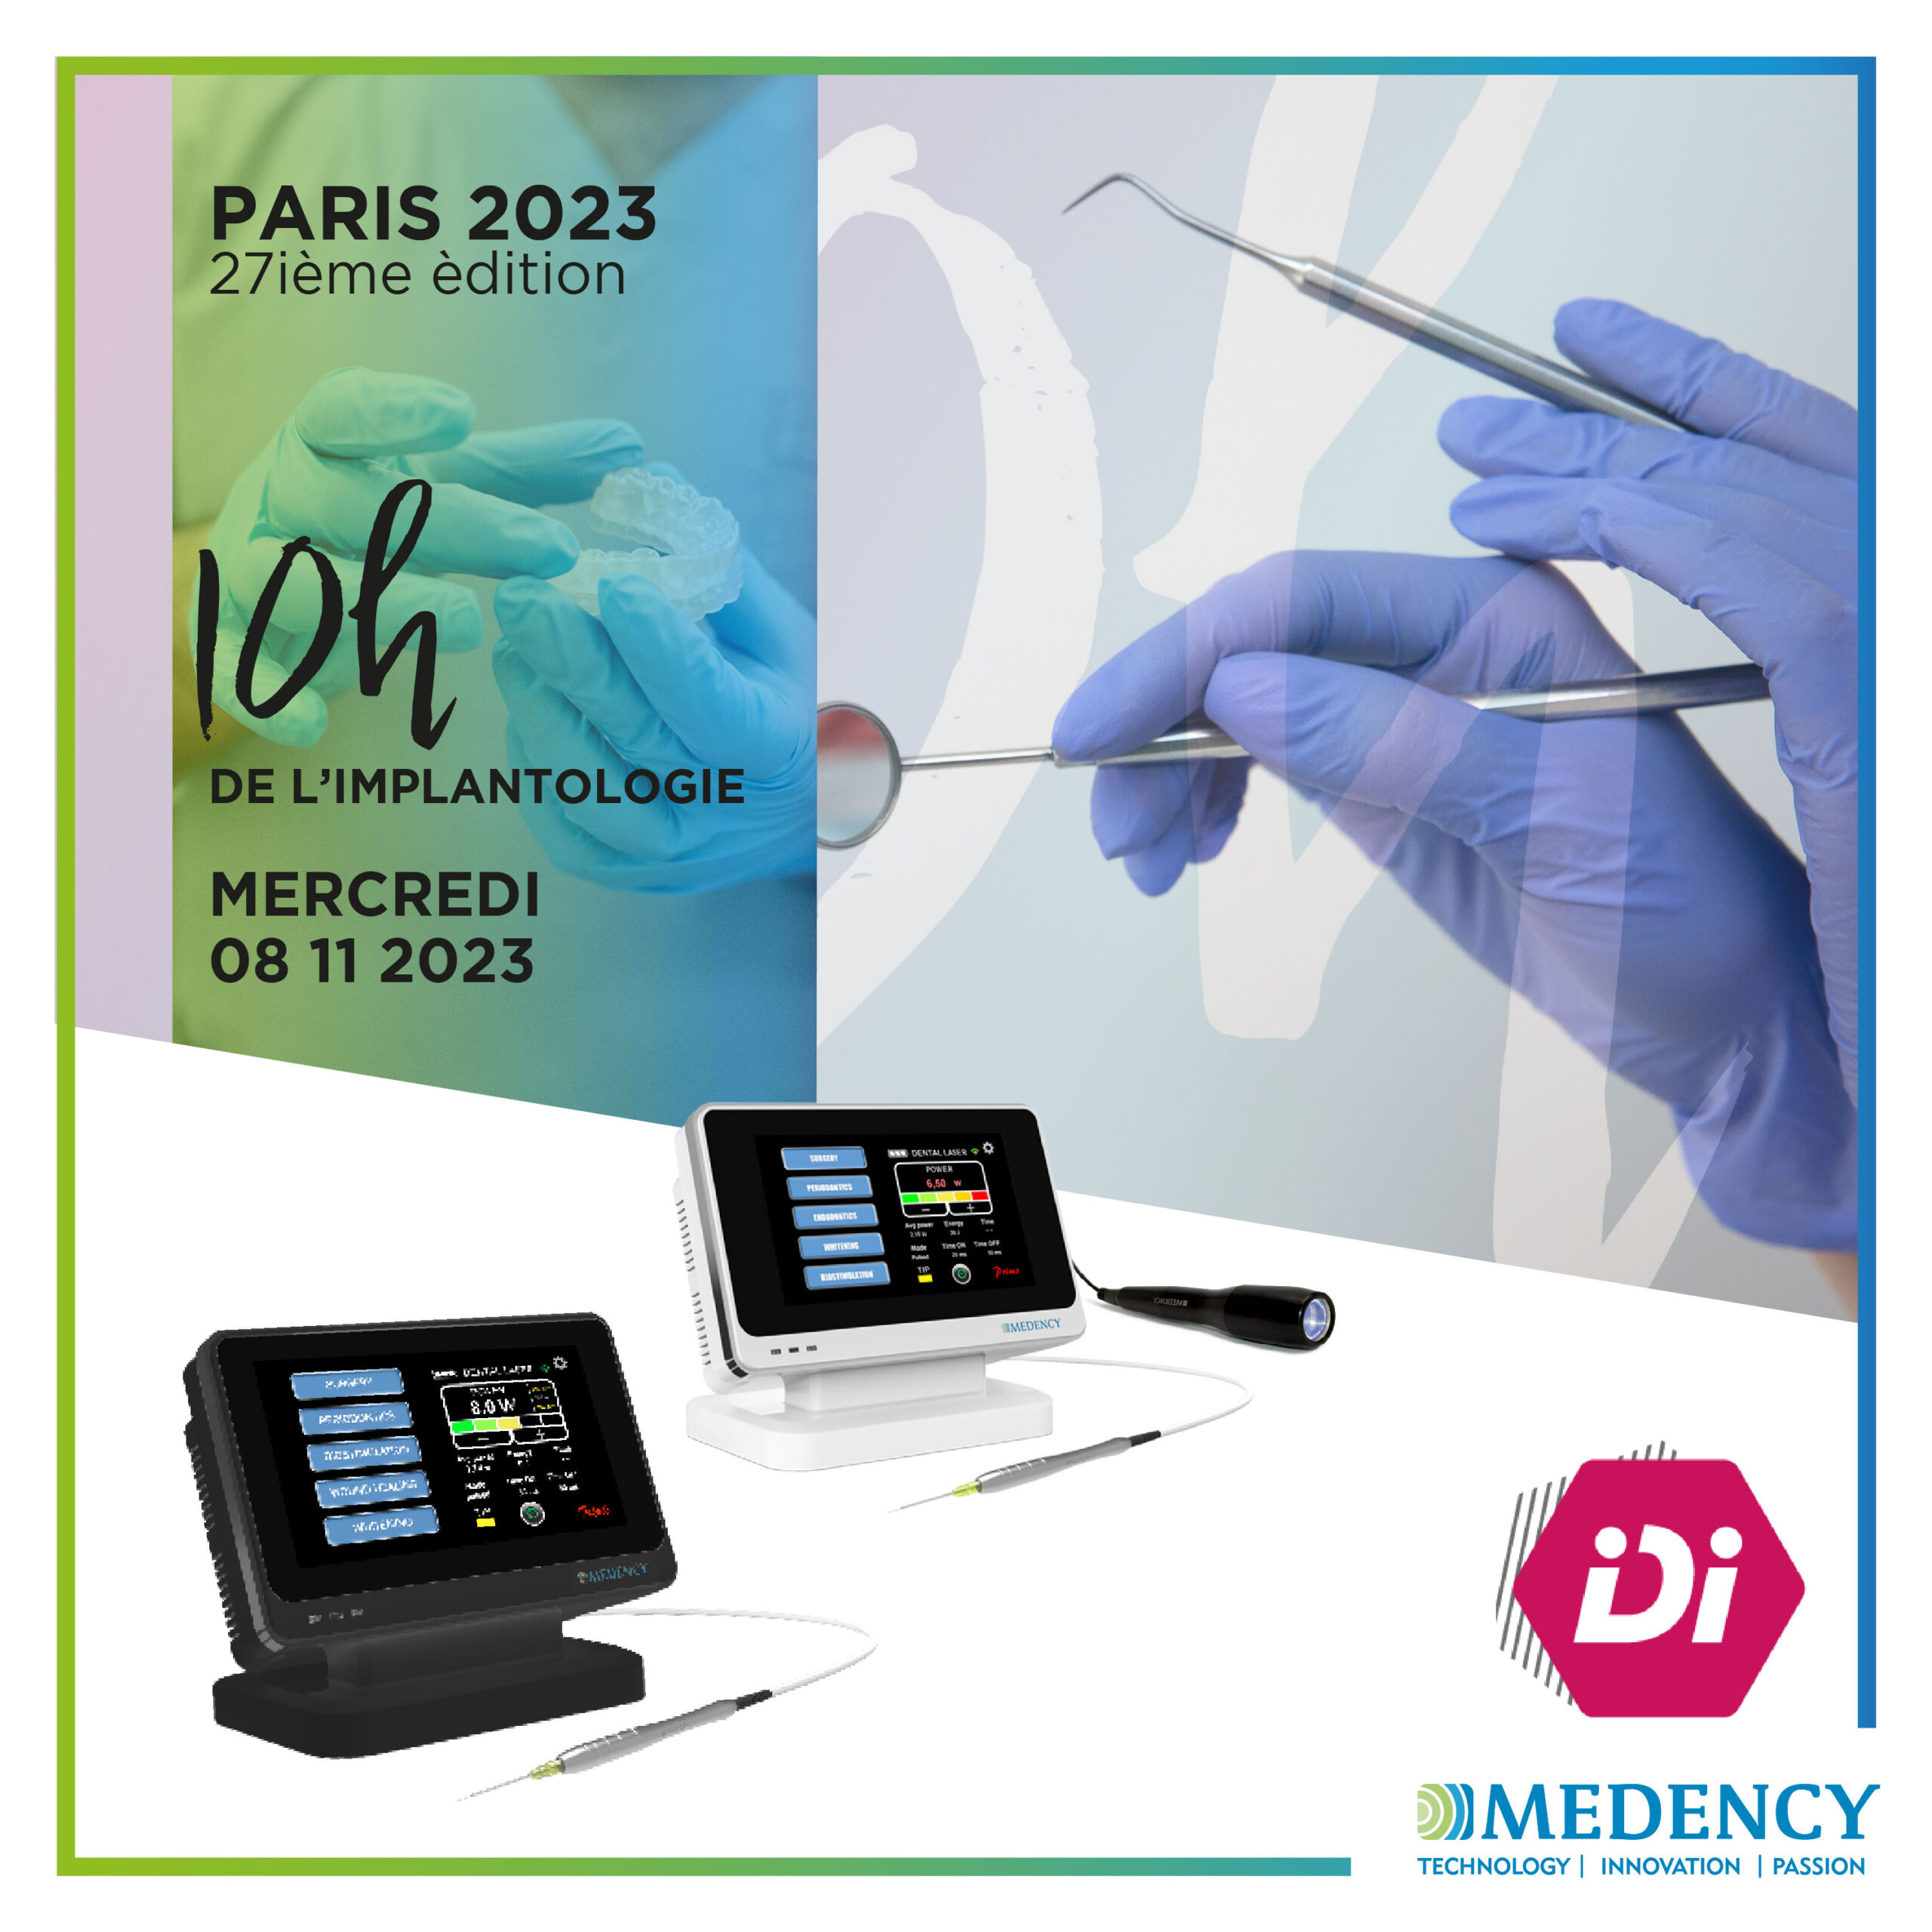 Read more about the article 10h de l’implantologie | Paris